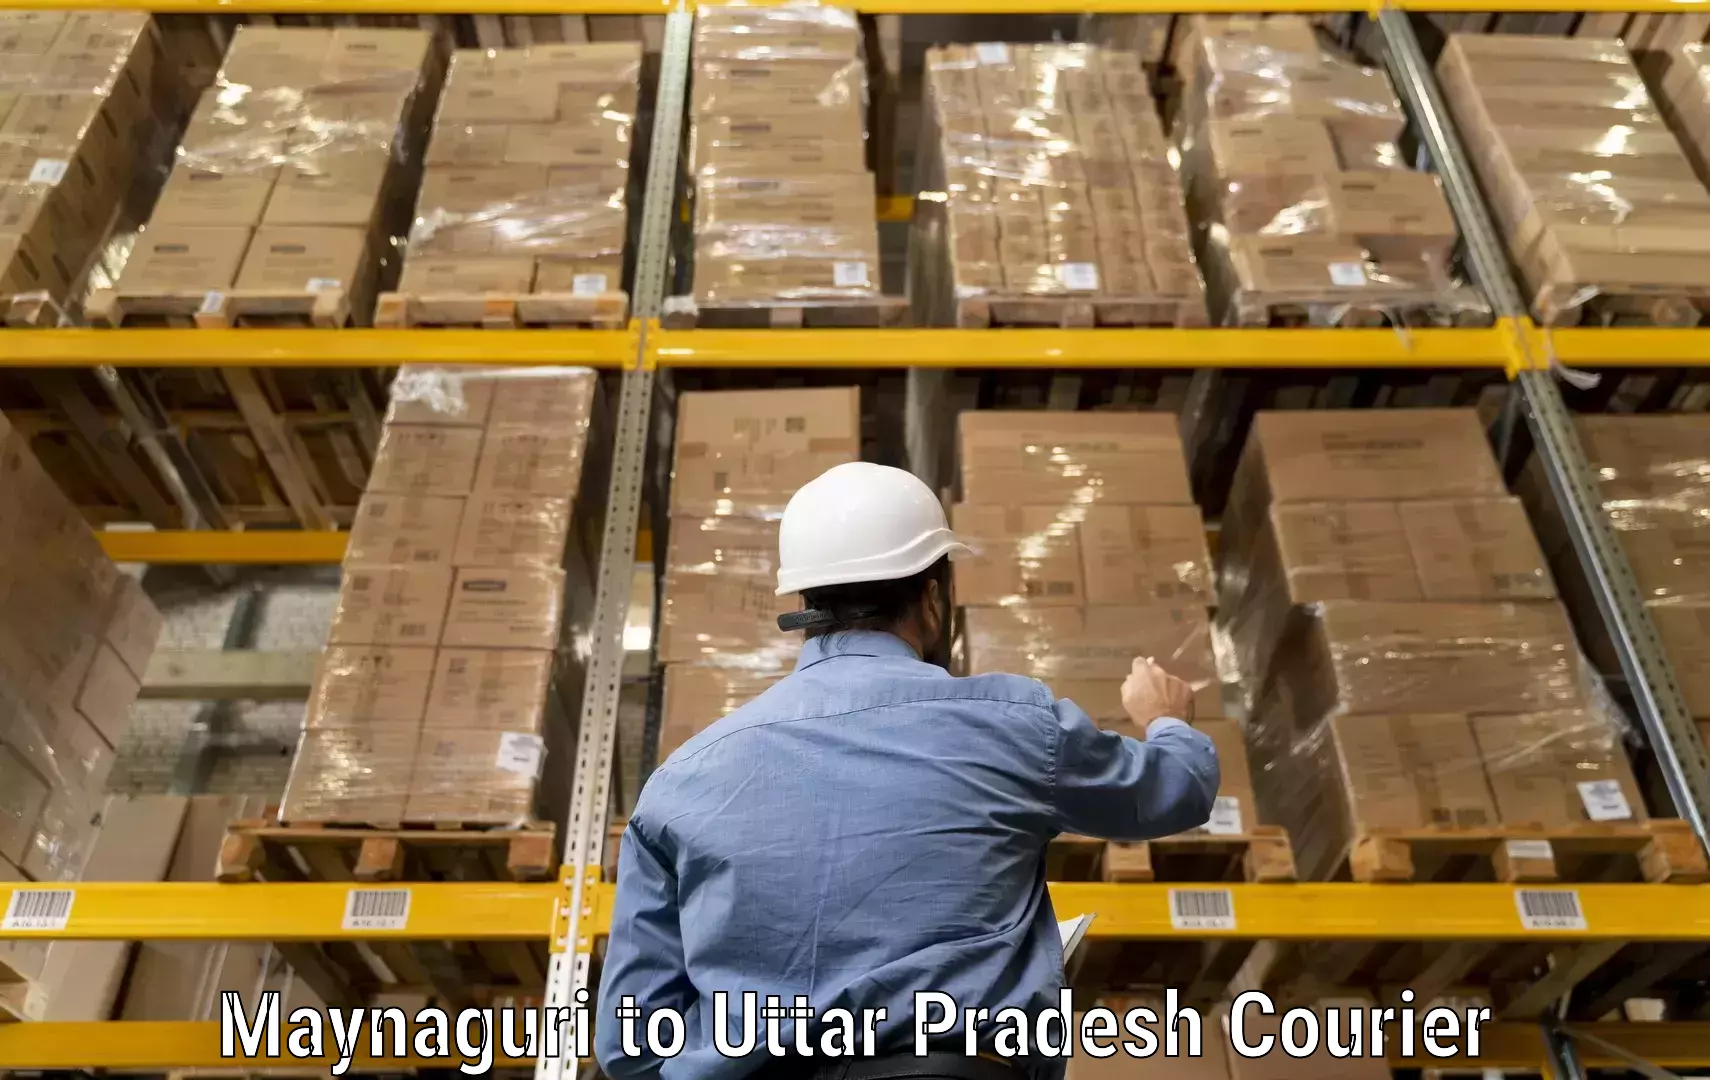 Specialized shipment handling Maynaguri to Uttar Pradesh